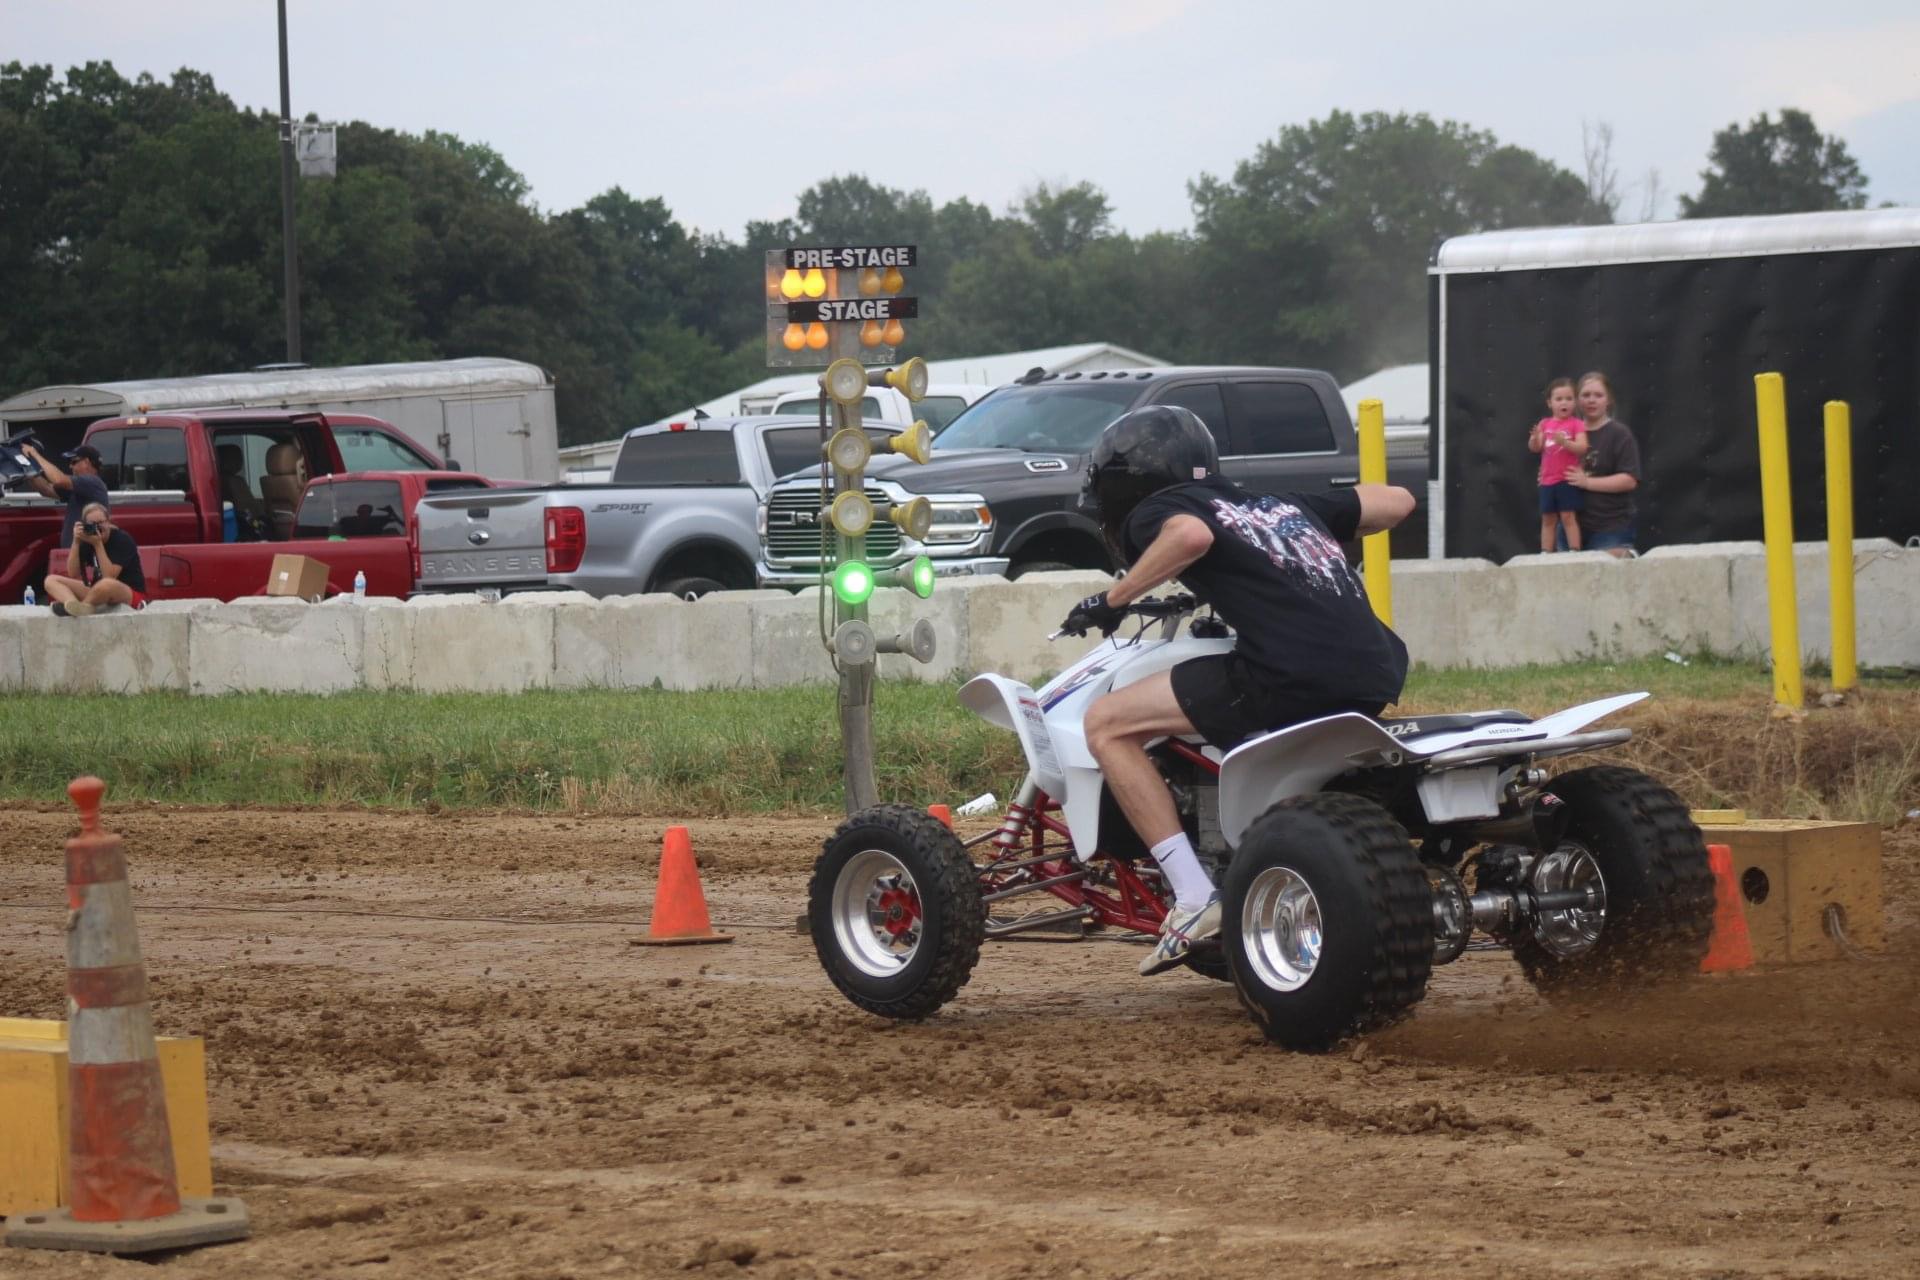 KOI Drag Racing at Marion County Fairgrounds